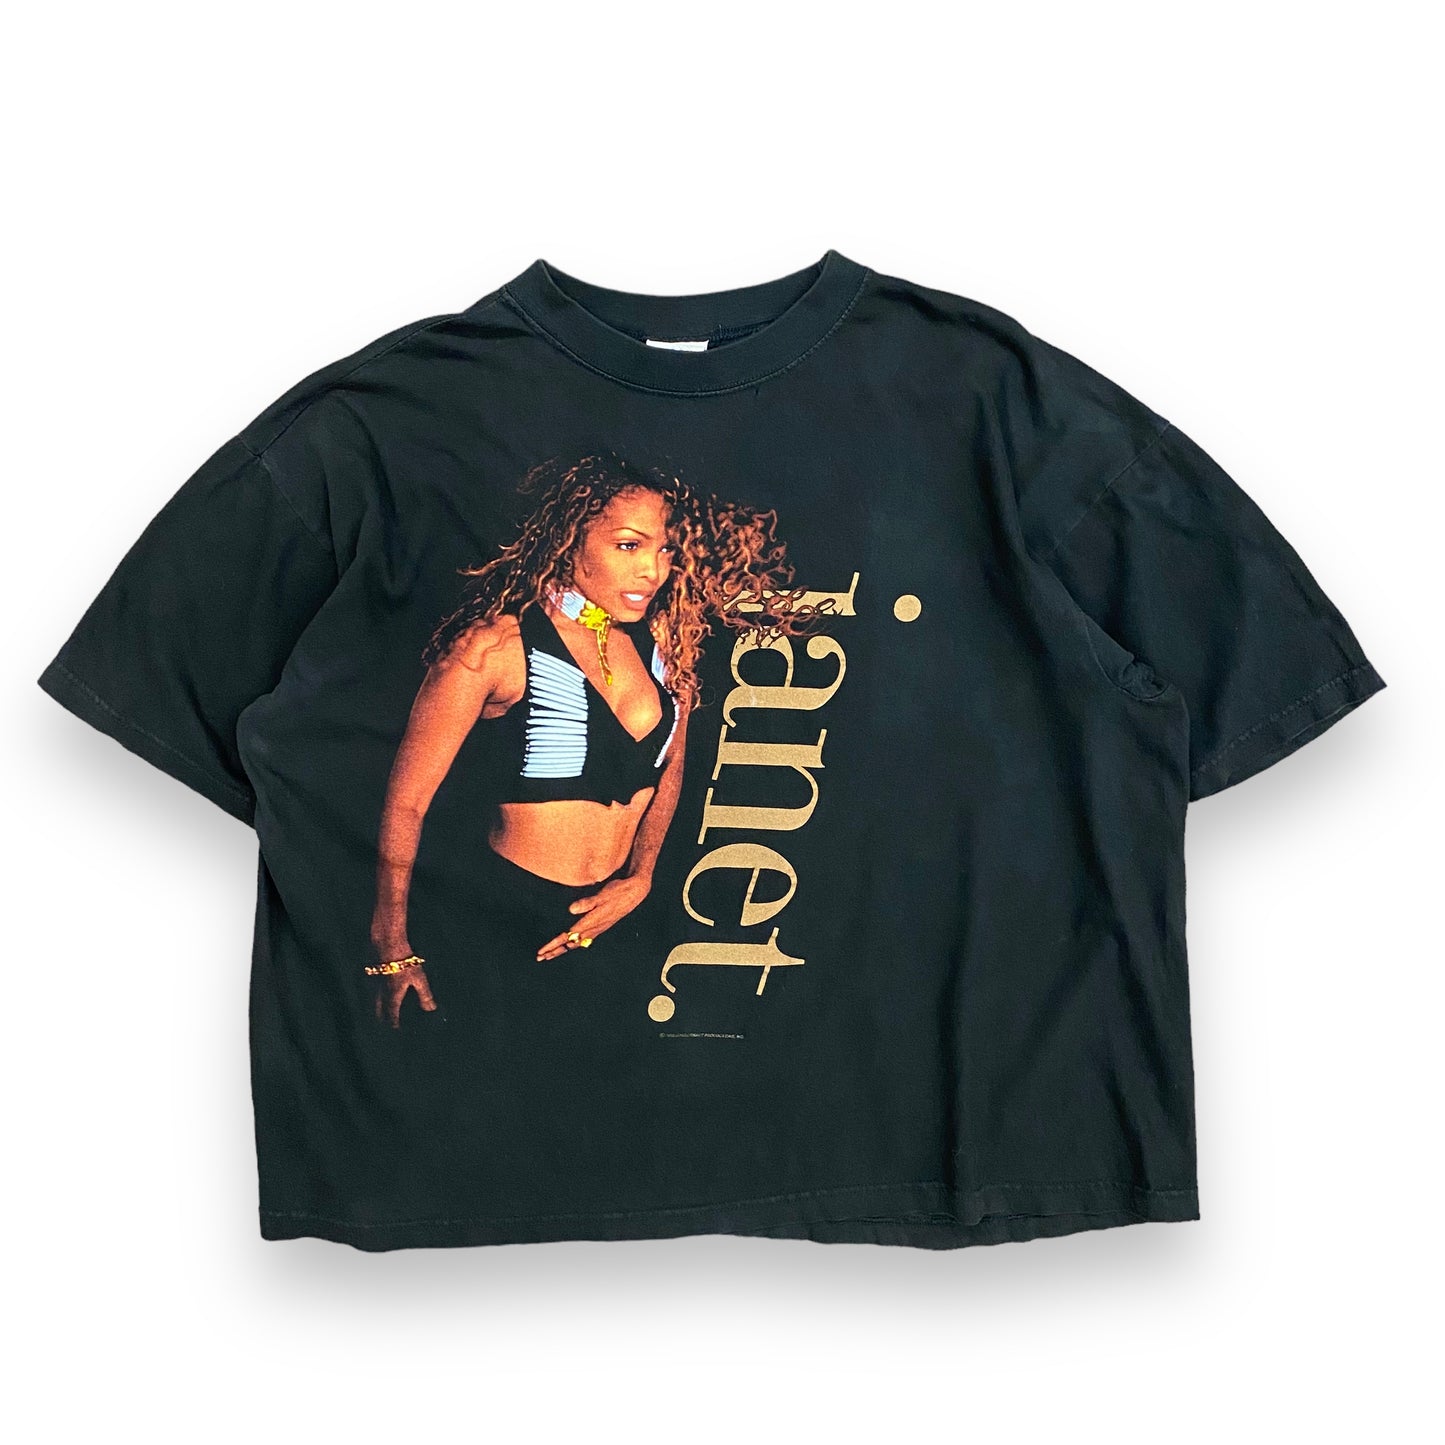 Vintage 1993/1994 Janet Jackson Tour Tee - Size XL